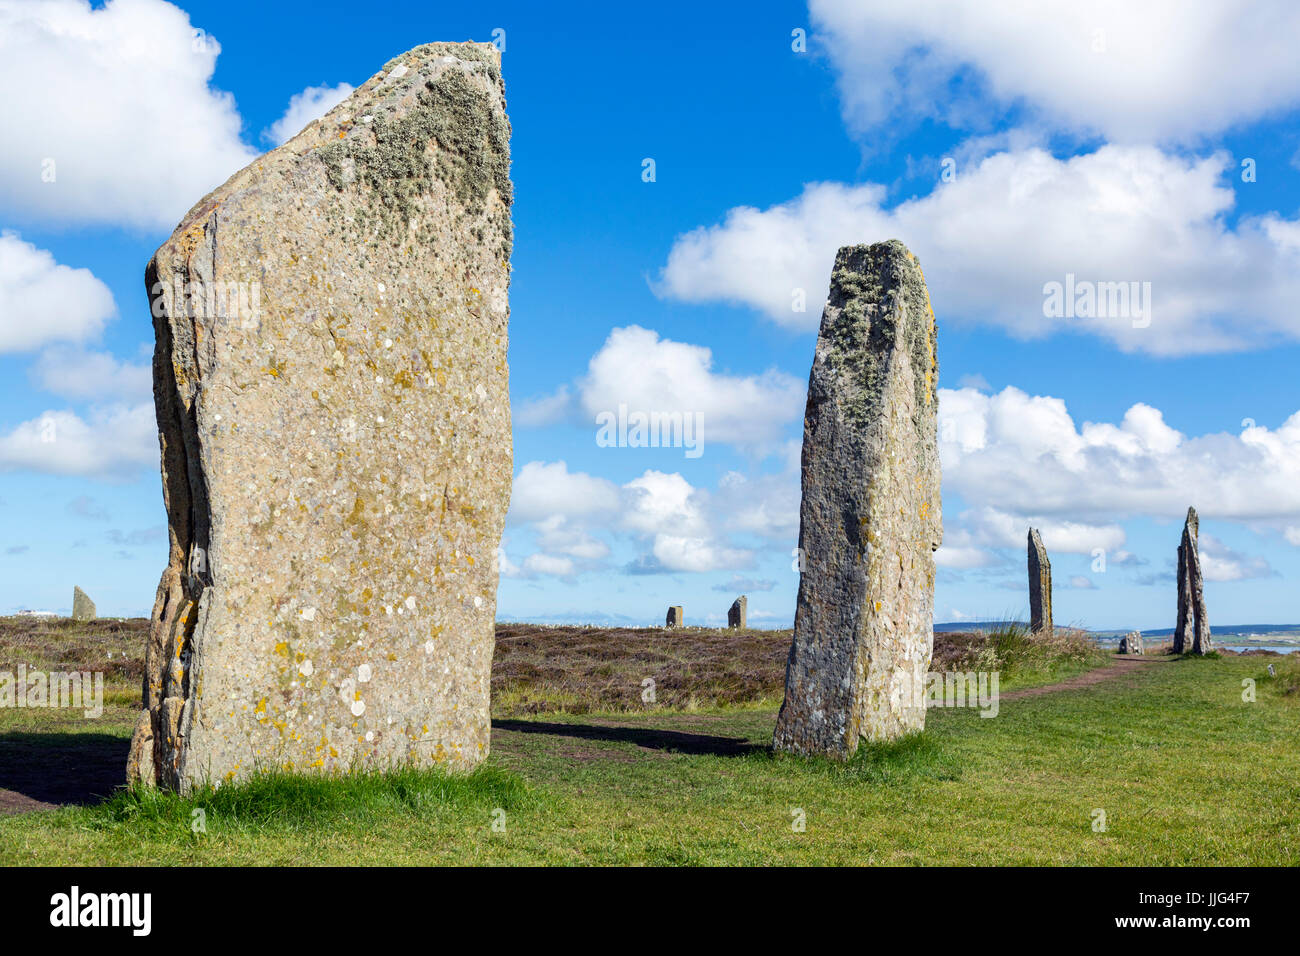 Anneau de Shetlands, Orkney. Cercle de pierres néolithiques, datant d'environ 2000 à 2500 avant J.-C., Mainland, Orcades, îles Orcades, Ecosse, Royaume-Uni Banque D'Images